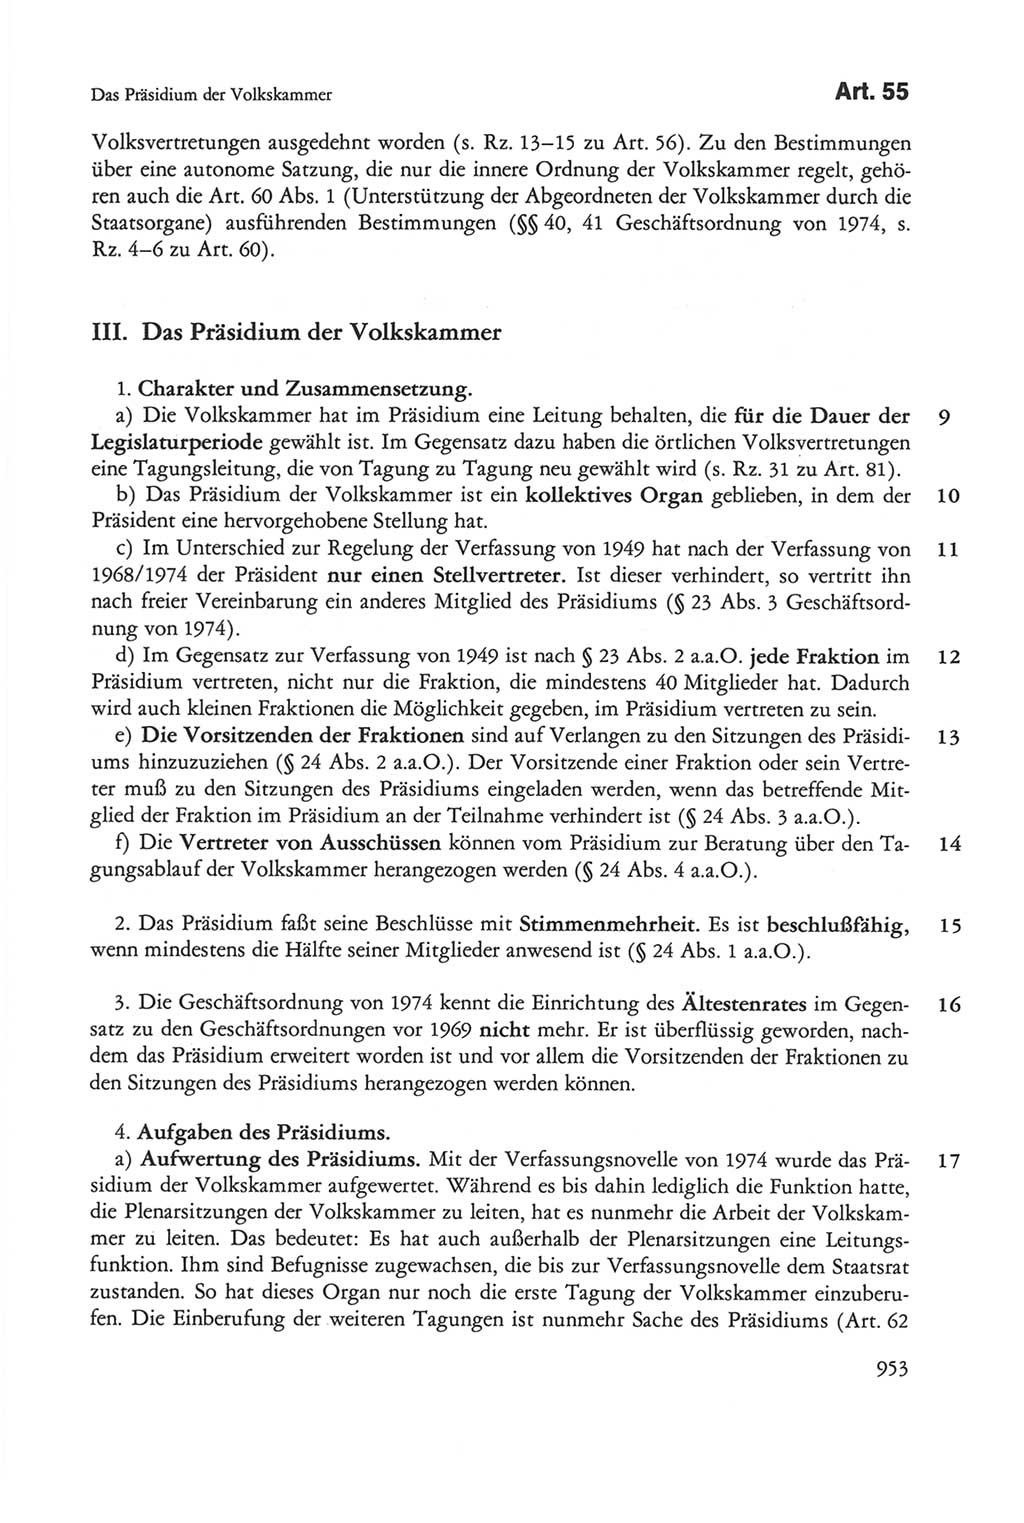 Die sozialistische Verfassung der Deutschen Demokratischen Republik (DDR), Kommentar 1982, Seite 953 (Soz. Verf. DDR Komm. 1982, S. 953)